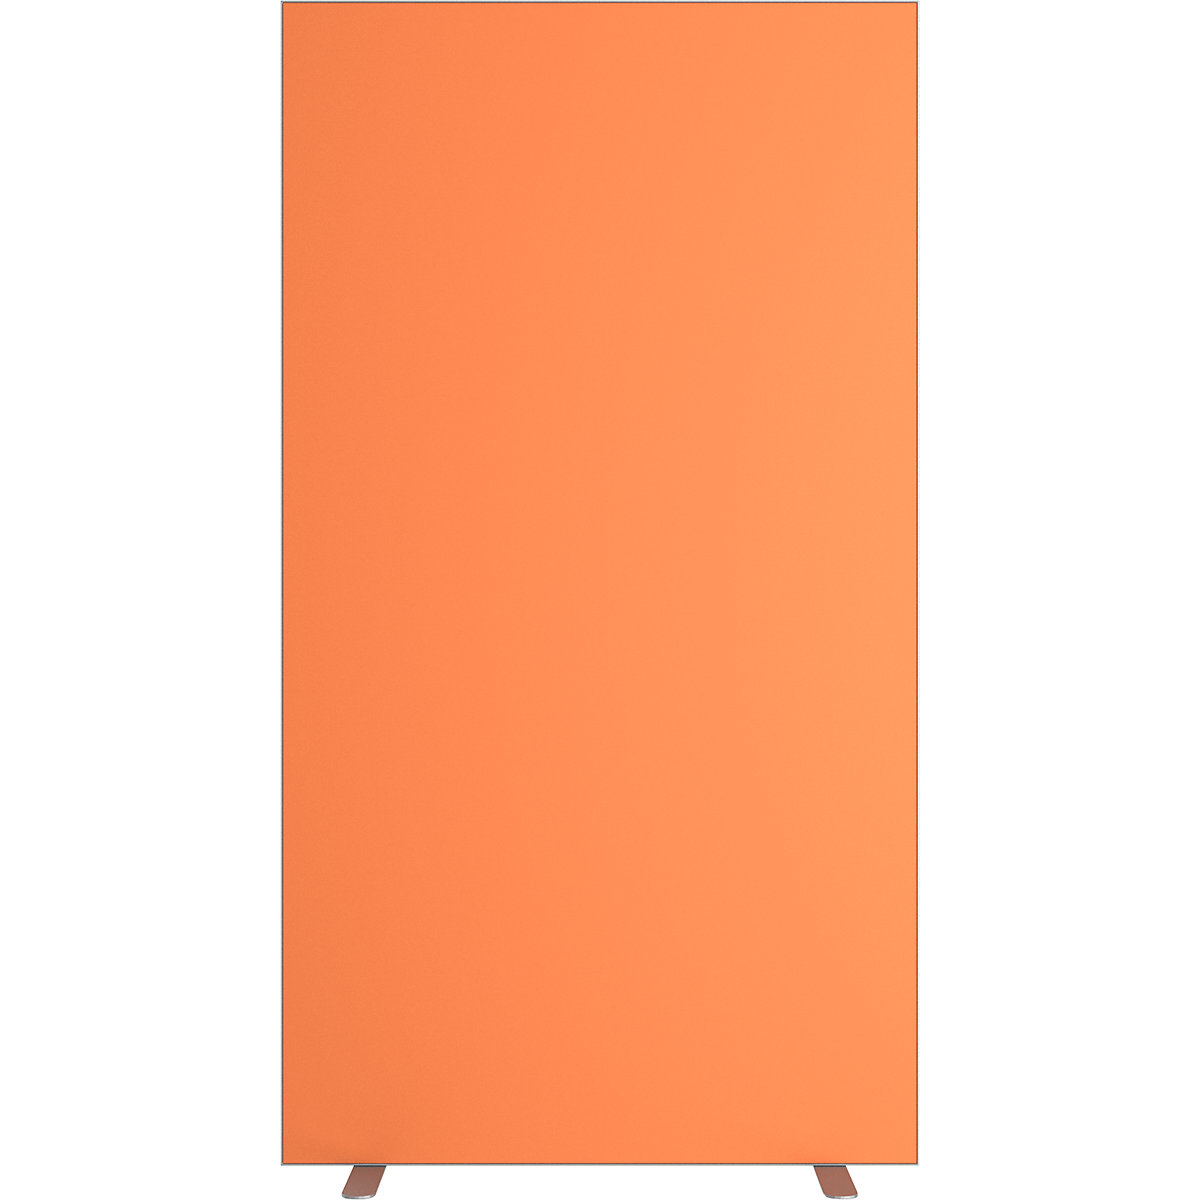 Predelna stena easyScreen, enobarvna izvedba, z zvočno izolacijo, oranžne barve, širina 940 mm